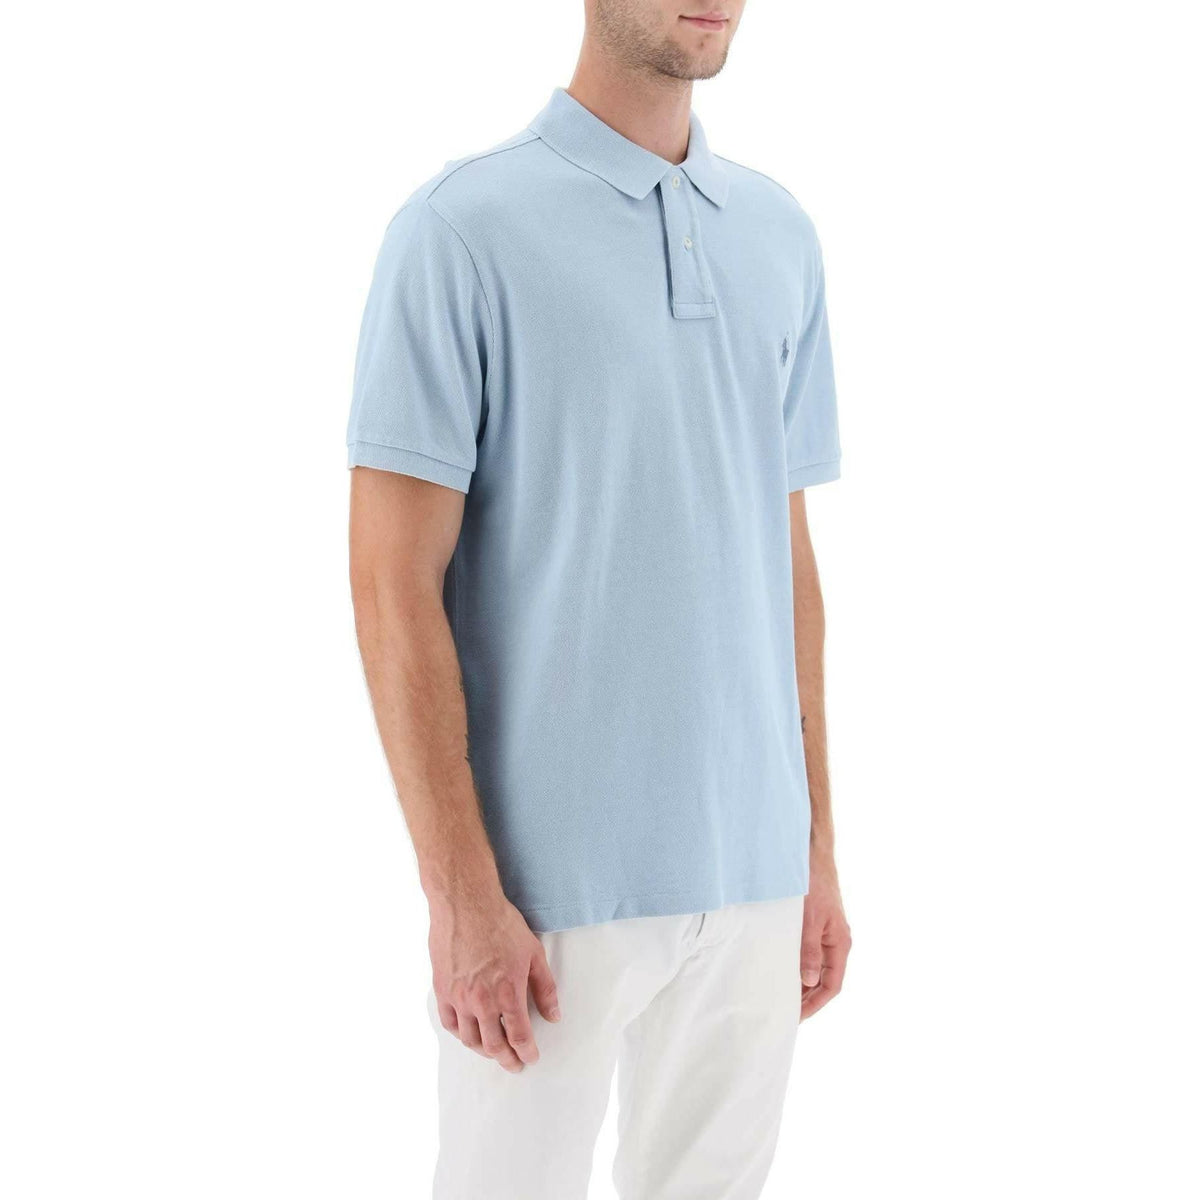 POLO RALPH LAUREN - Pique Cotton Polo Shirt - JOHN JULIA